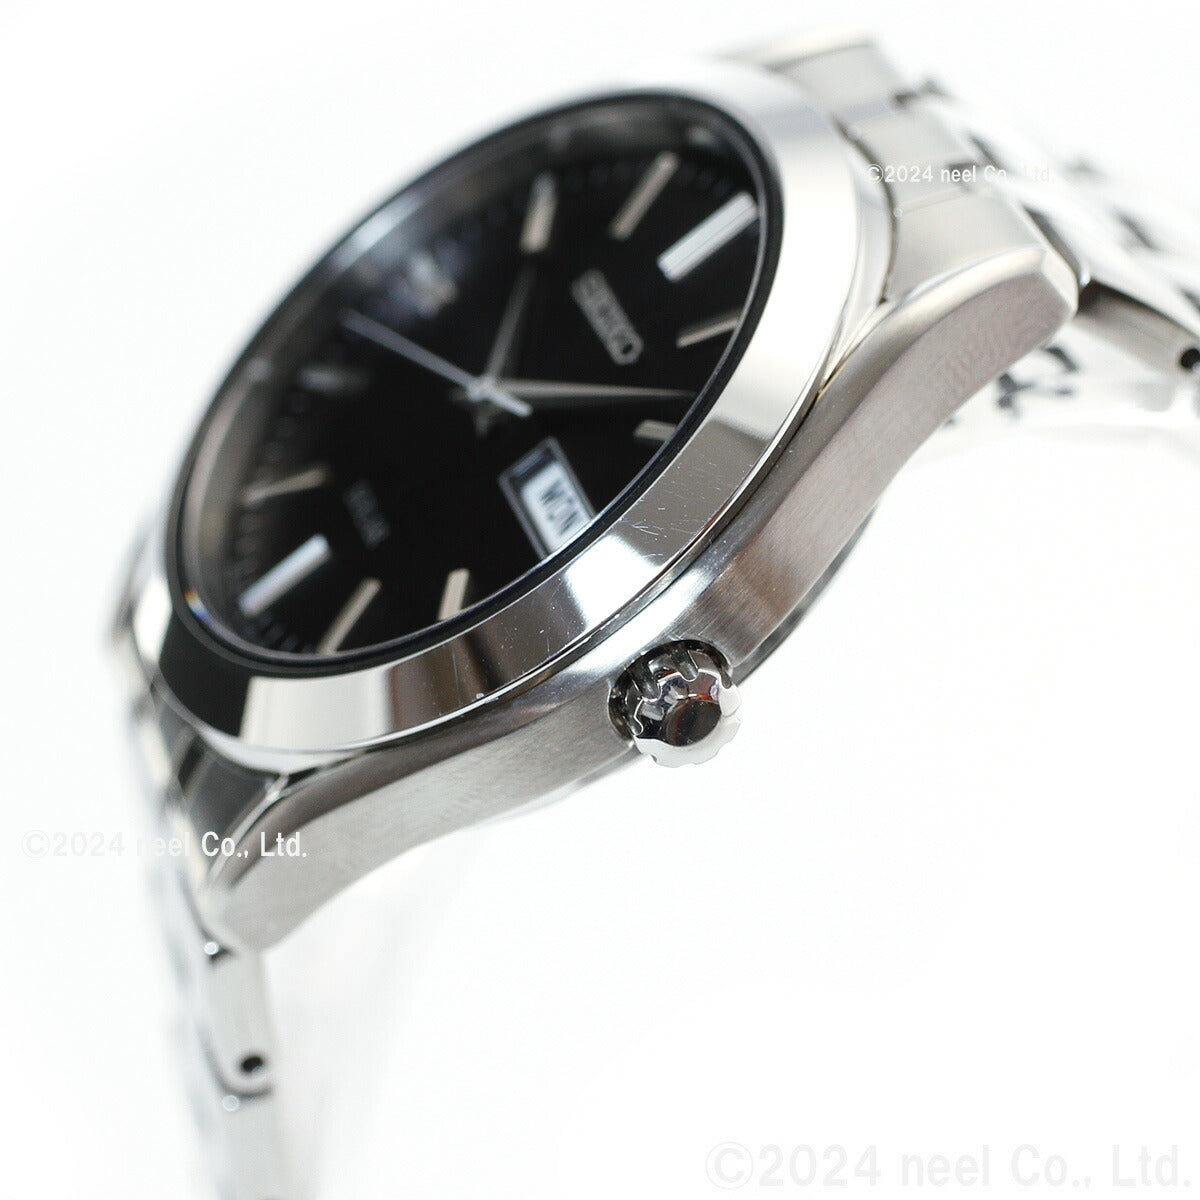 セイコー セレクション SEIKO SELECTION ソーラー 腕時計 メンズ レディース ペアモデル SBPX083 STPX031